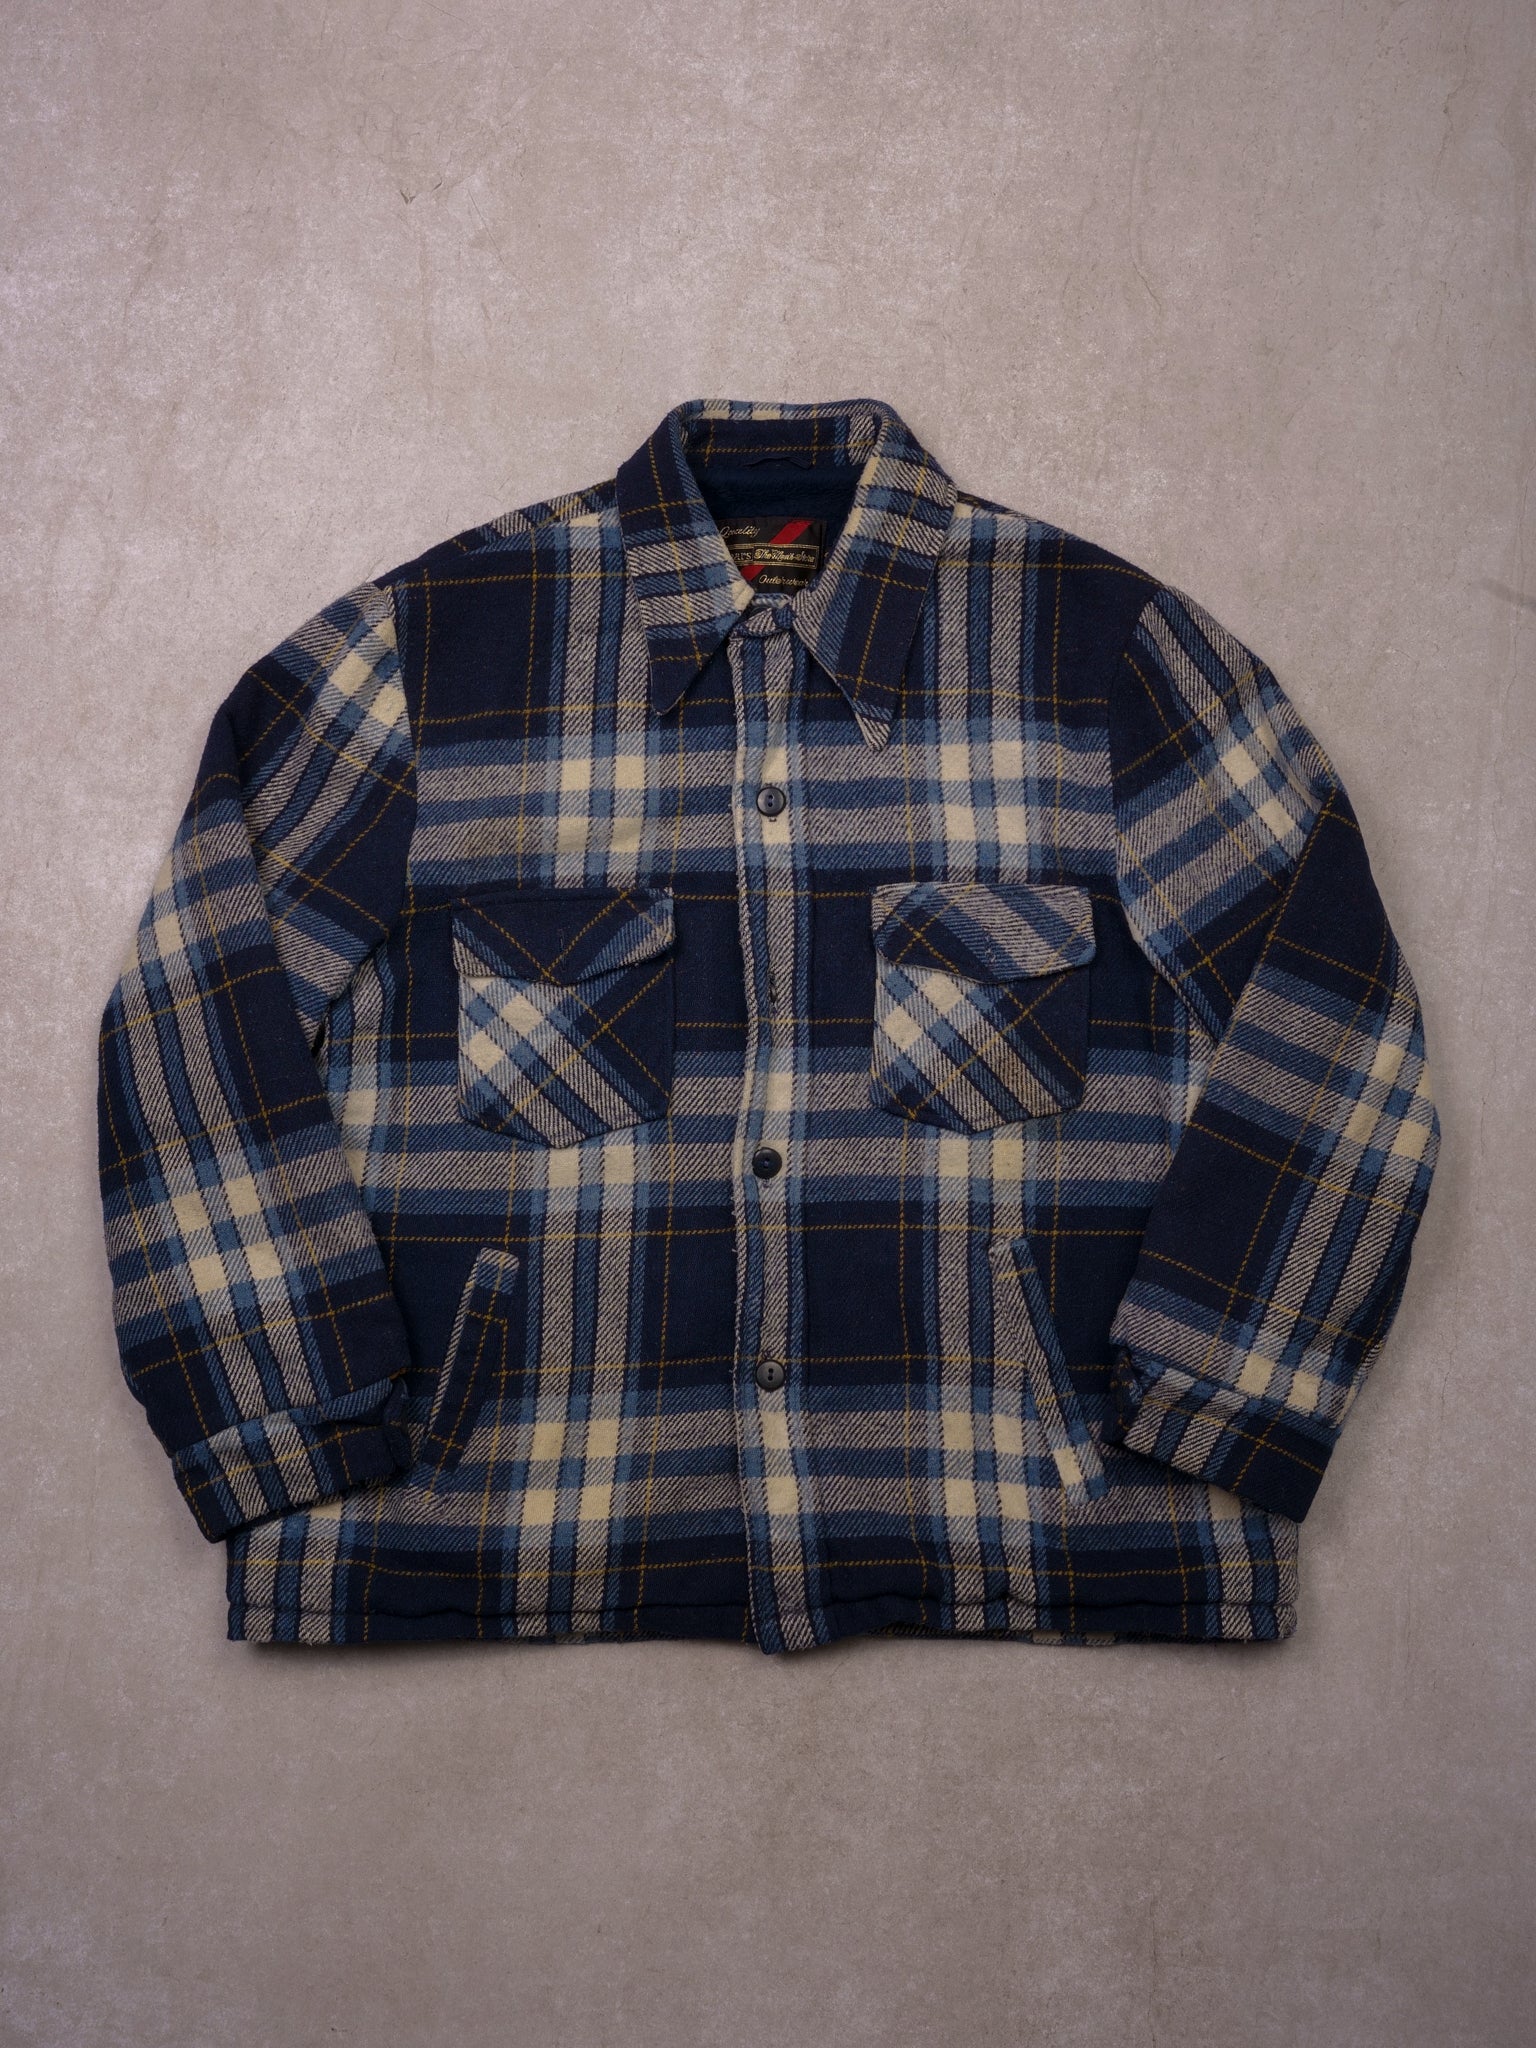 Vintage 90s Blue Plaid Sears Wool Inned Lined Jacket (L)